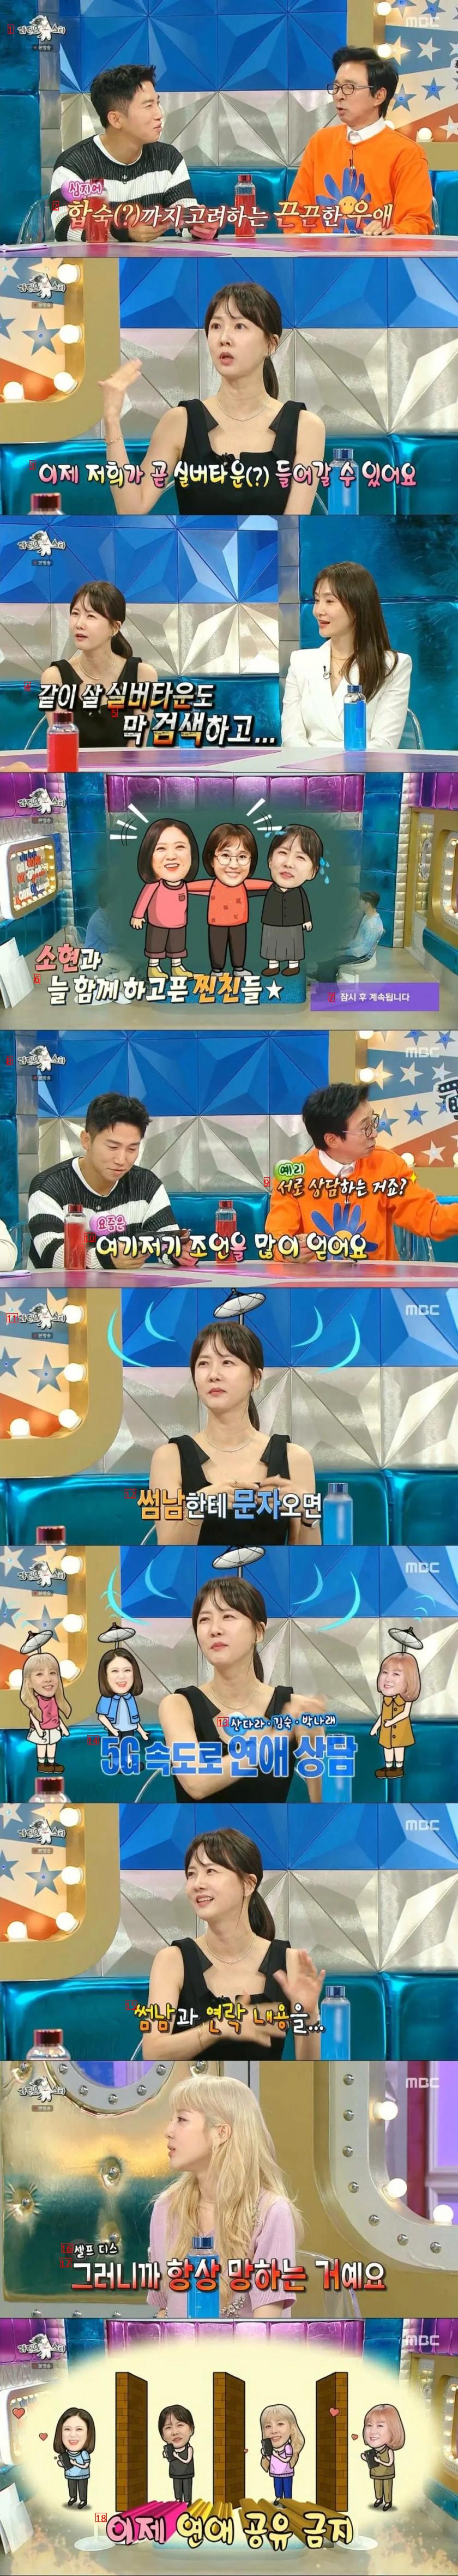 박소현이 결혼을 못하는이유.jpg